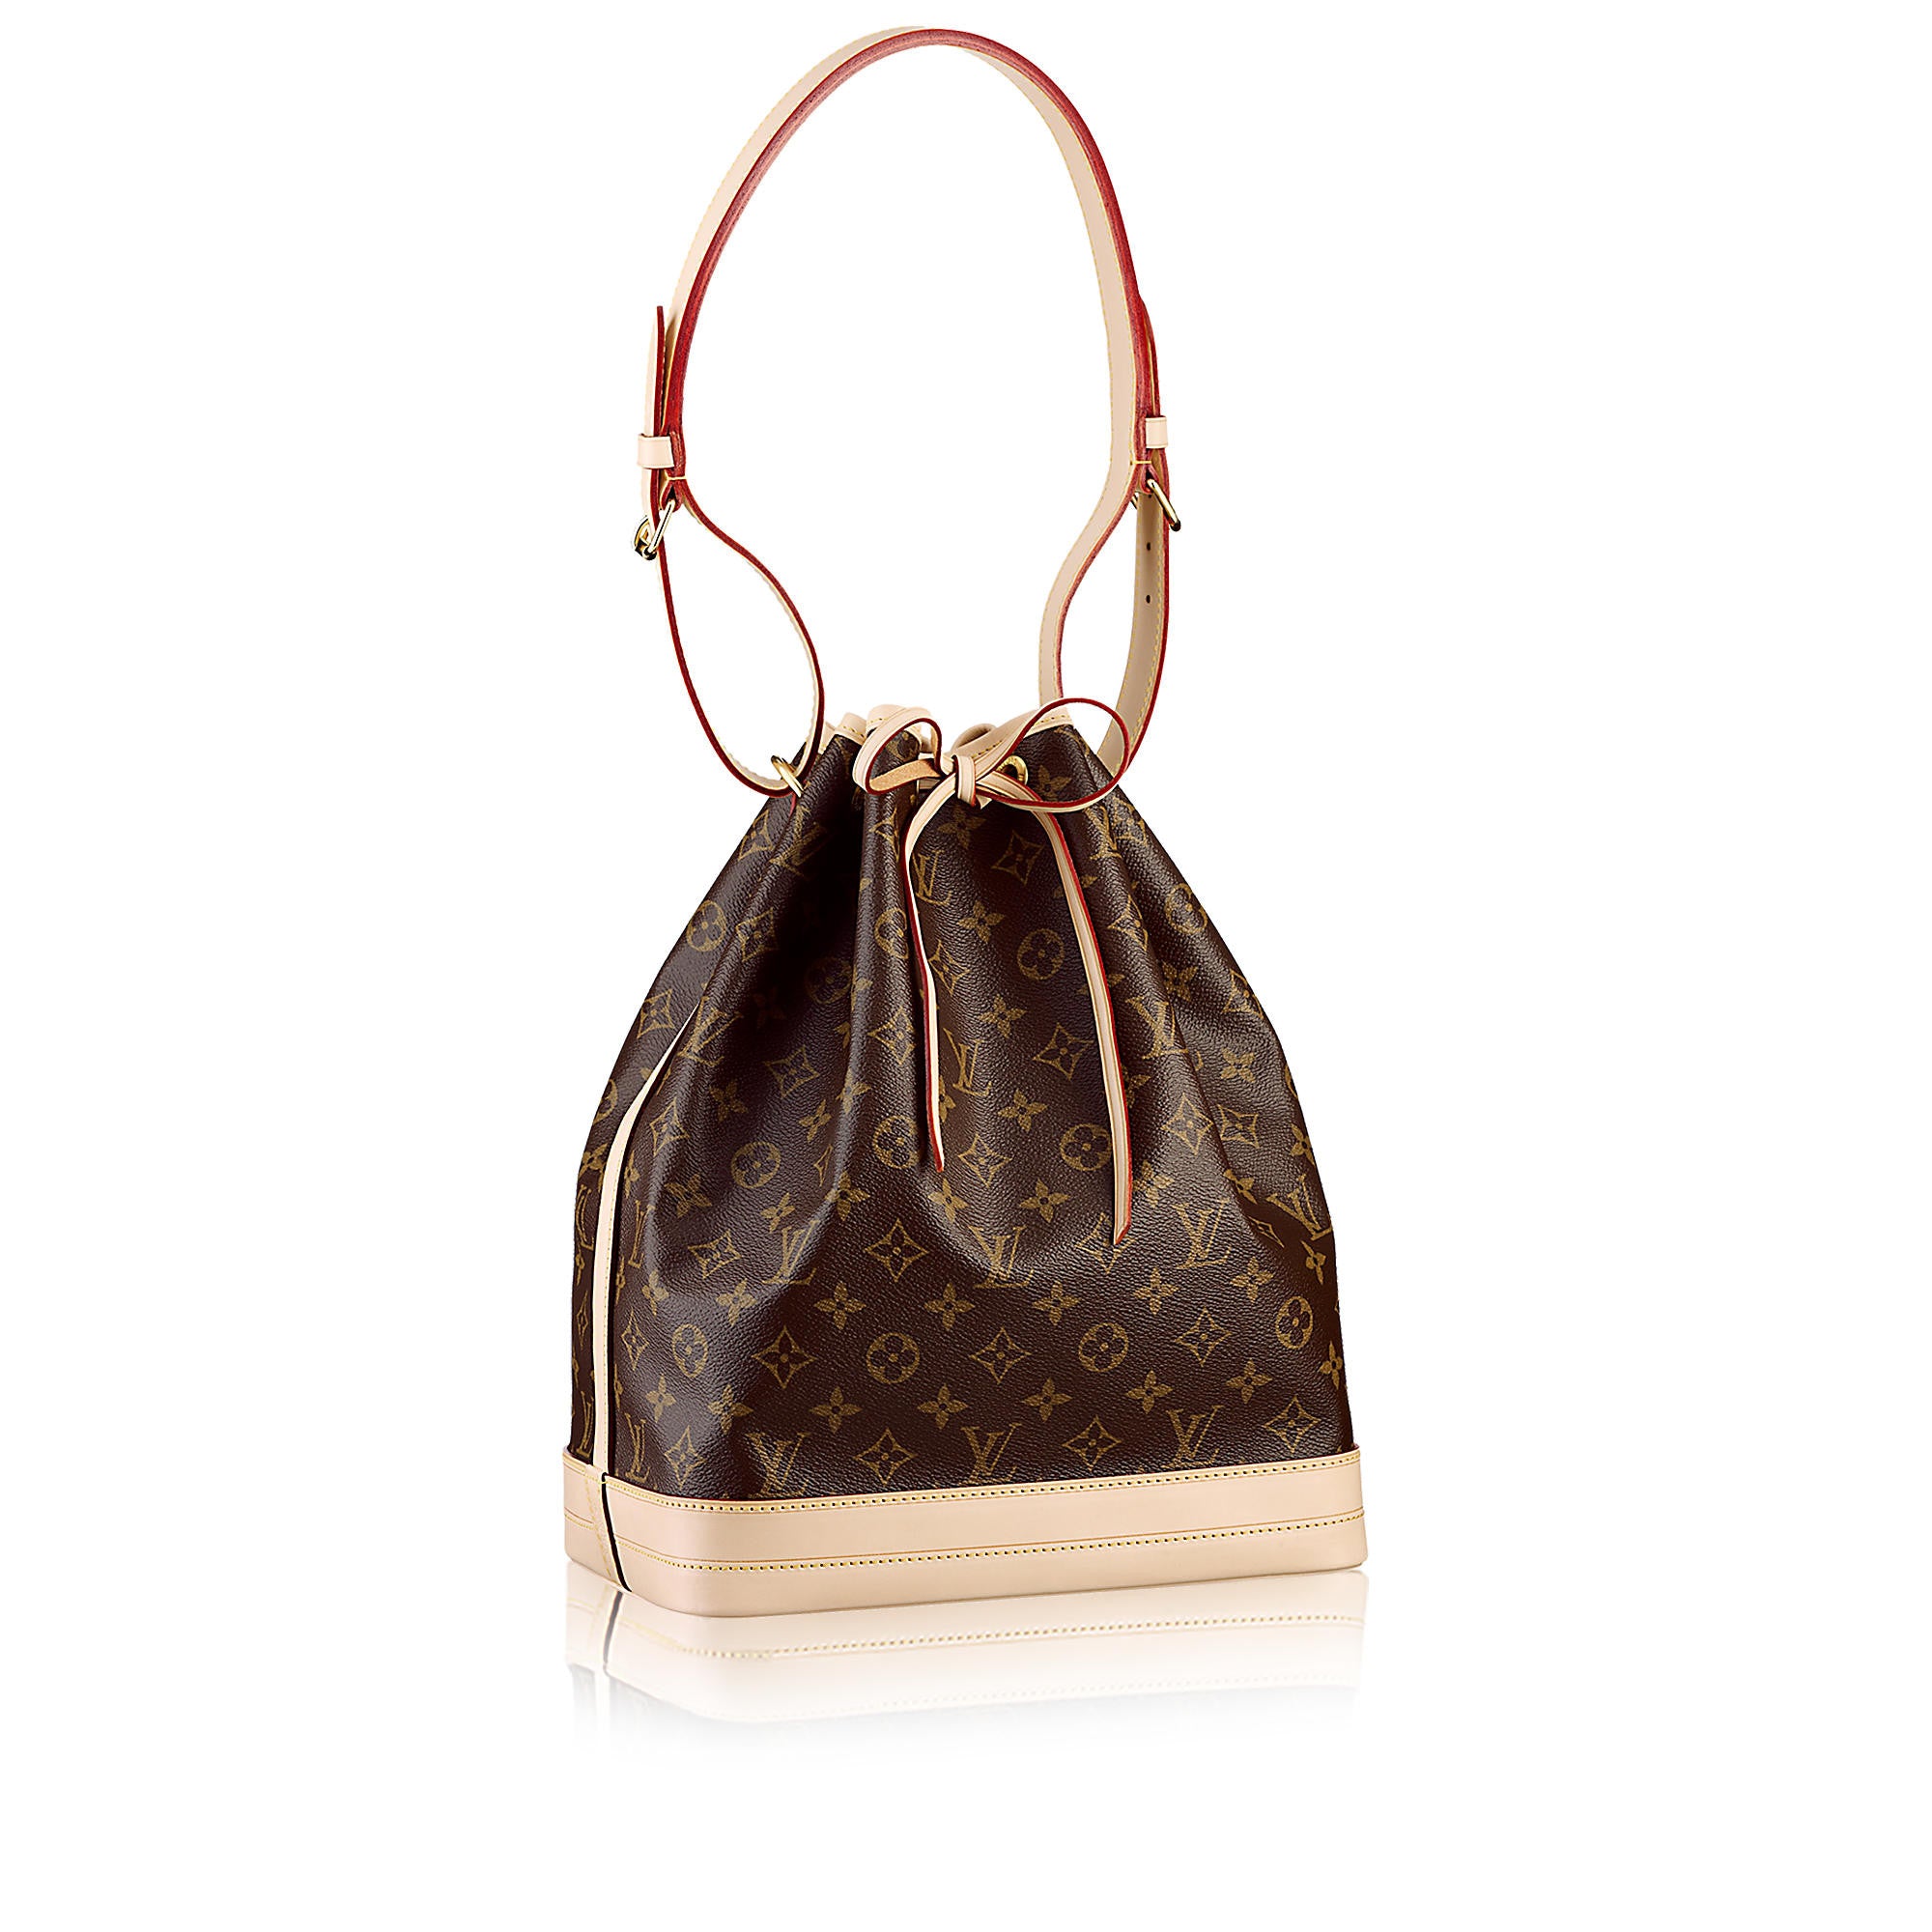 Top 10 Classic Louis Vuitton Handbags - FifthAvenueGirl.com